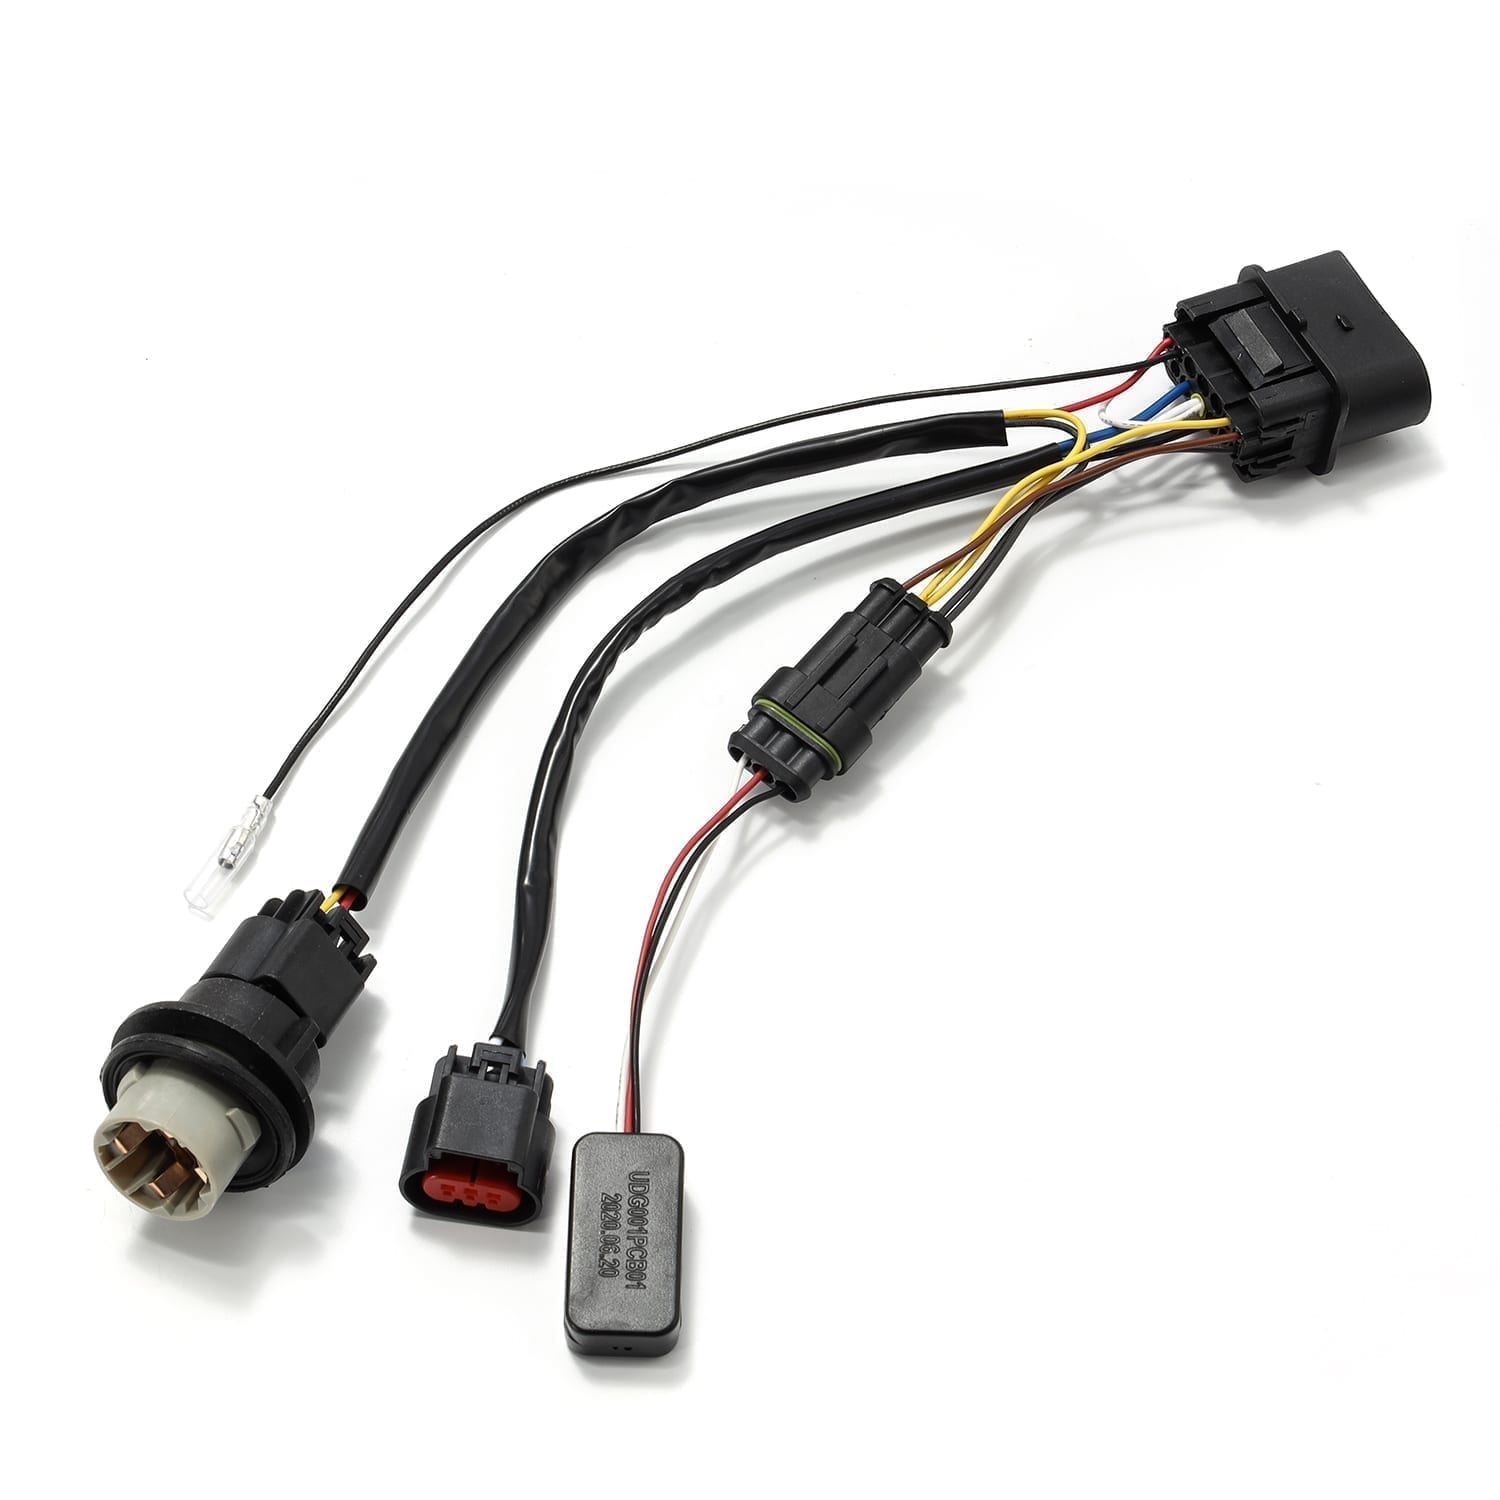 AlphaRex 13-18 Ram 1500 Wiring Adapter Stock Proj Headlight to AlphaRex Headlight Converters - 0